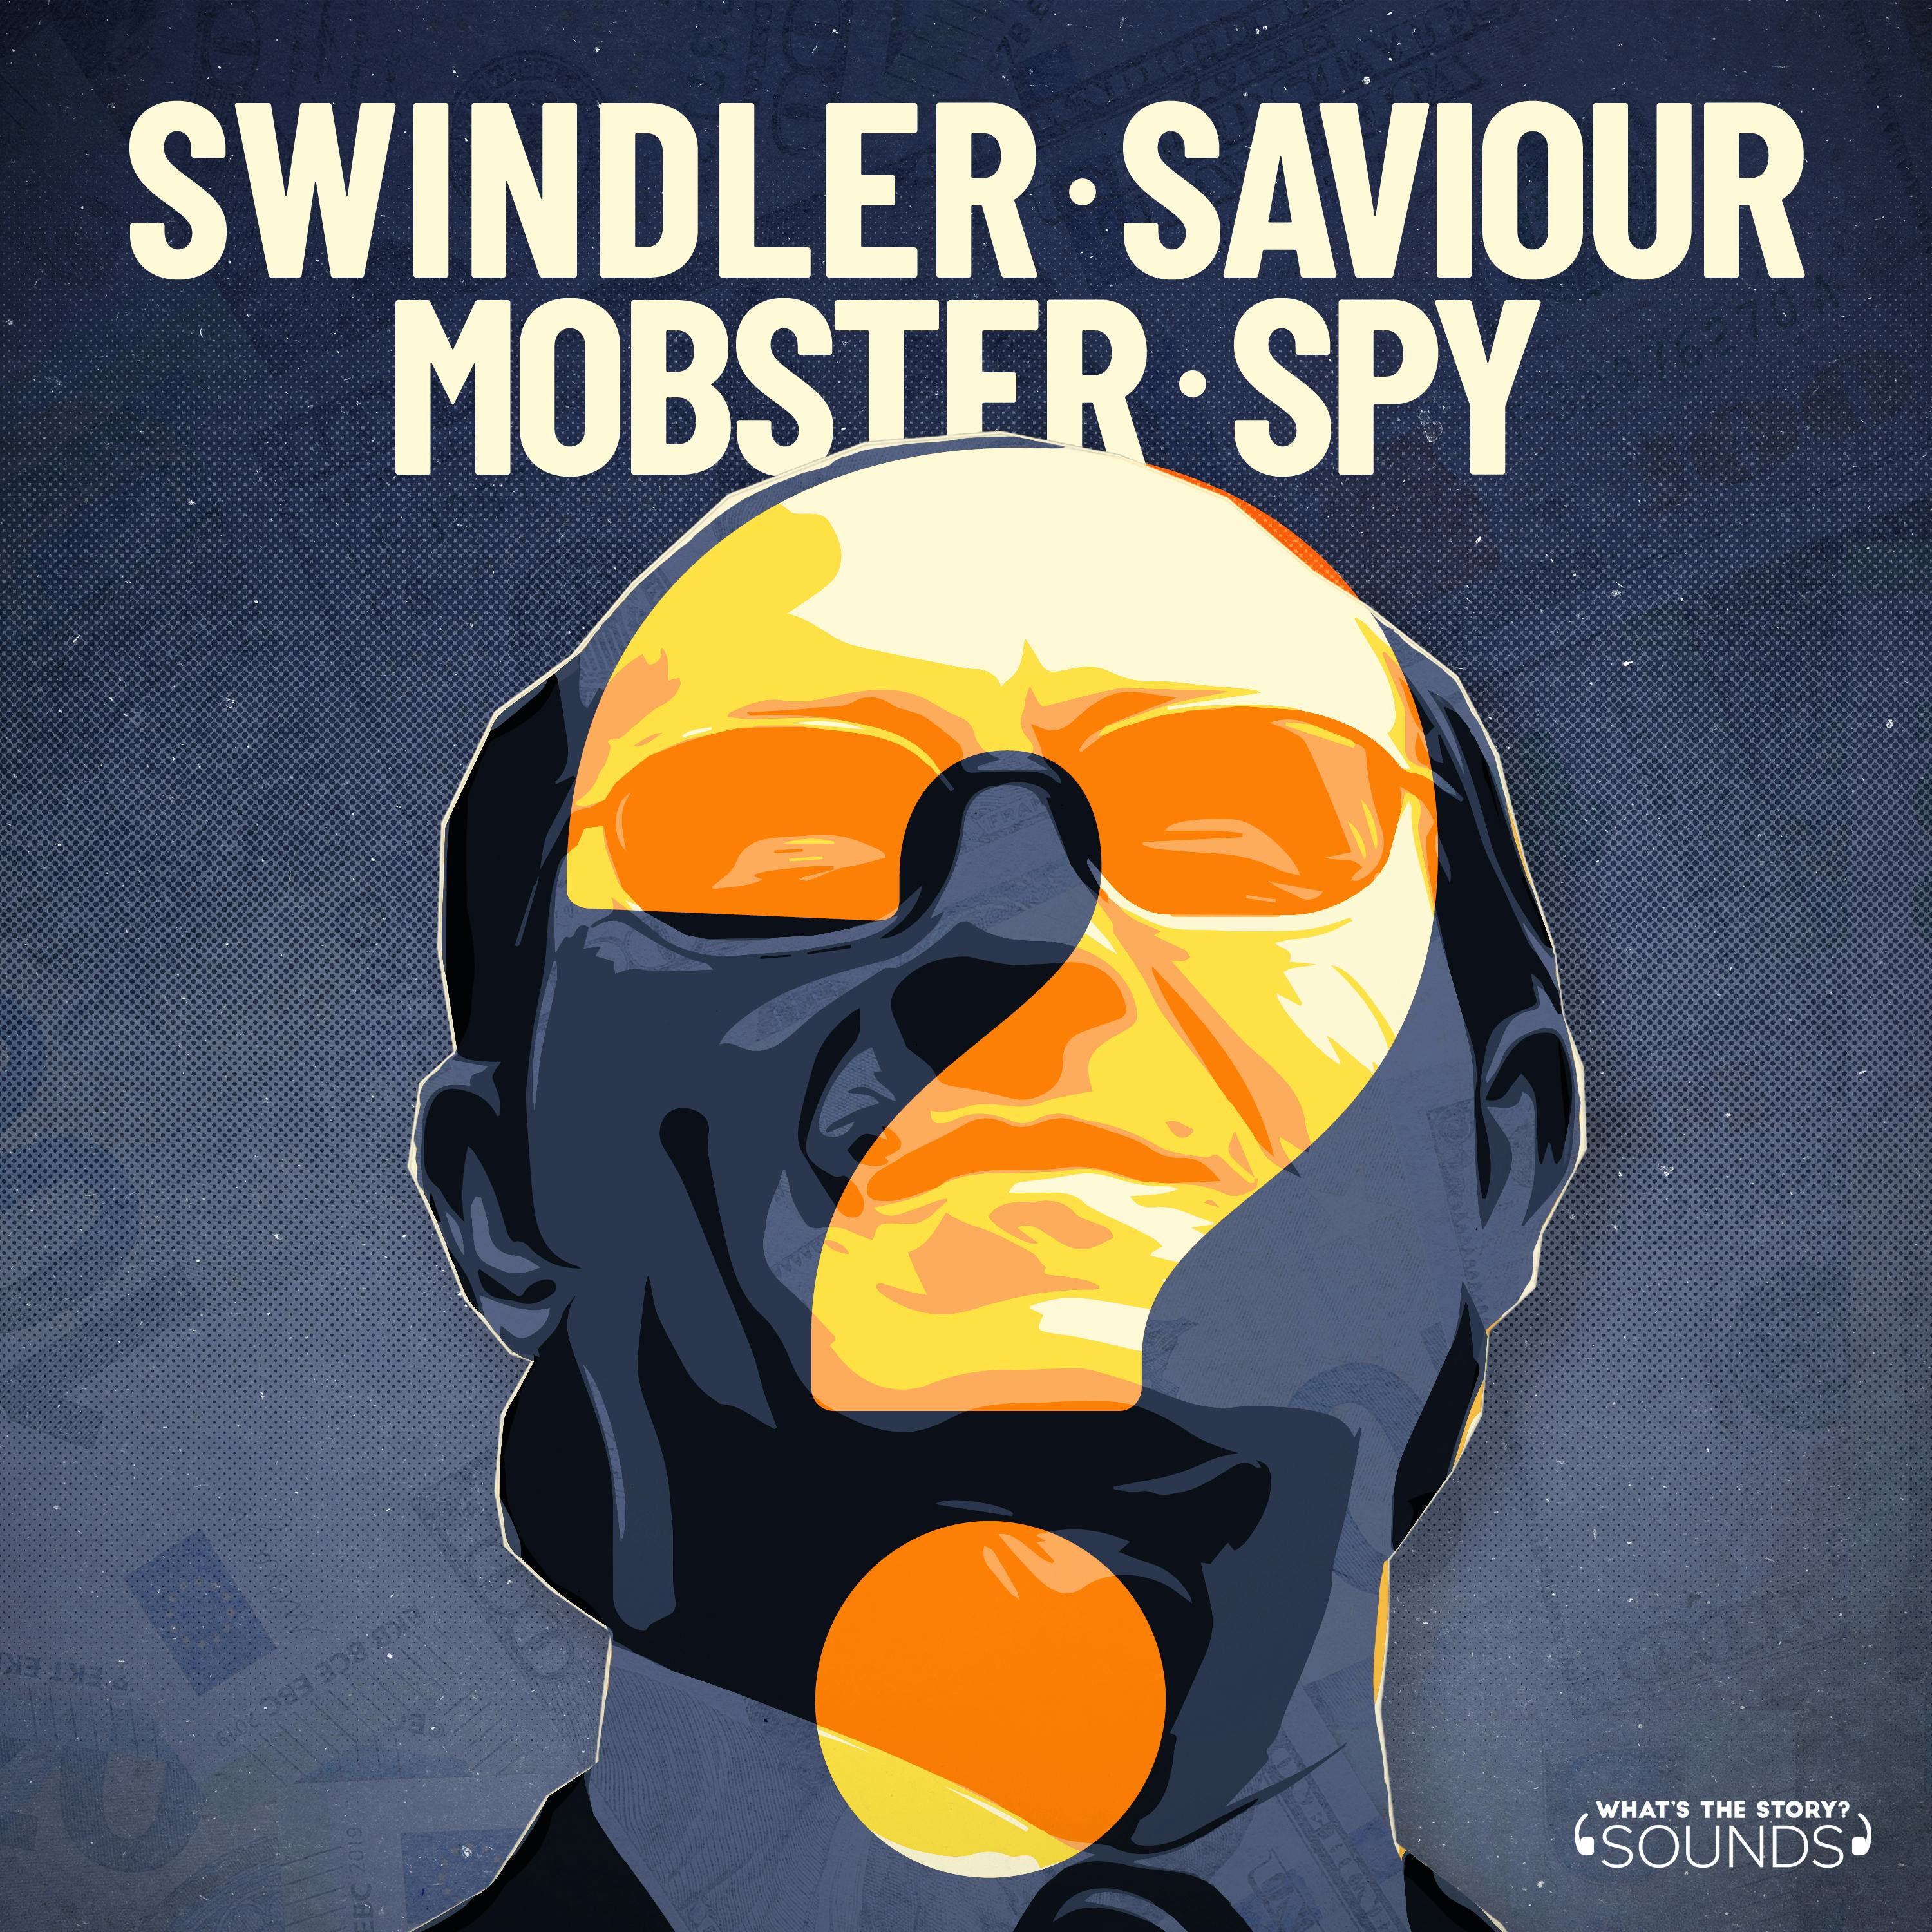 Swindler. Saviour. Mobster. Spy? podcast show image